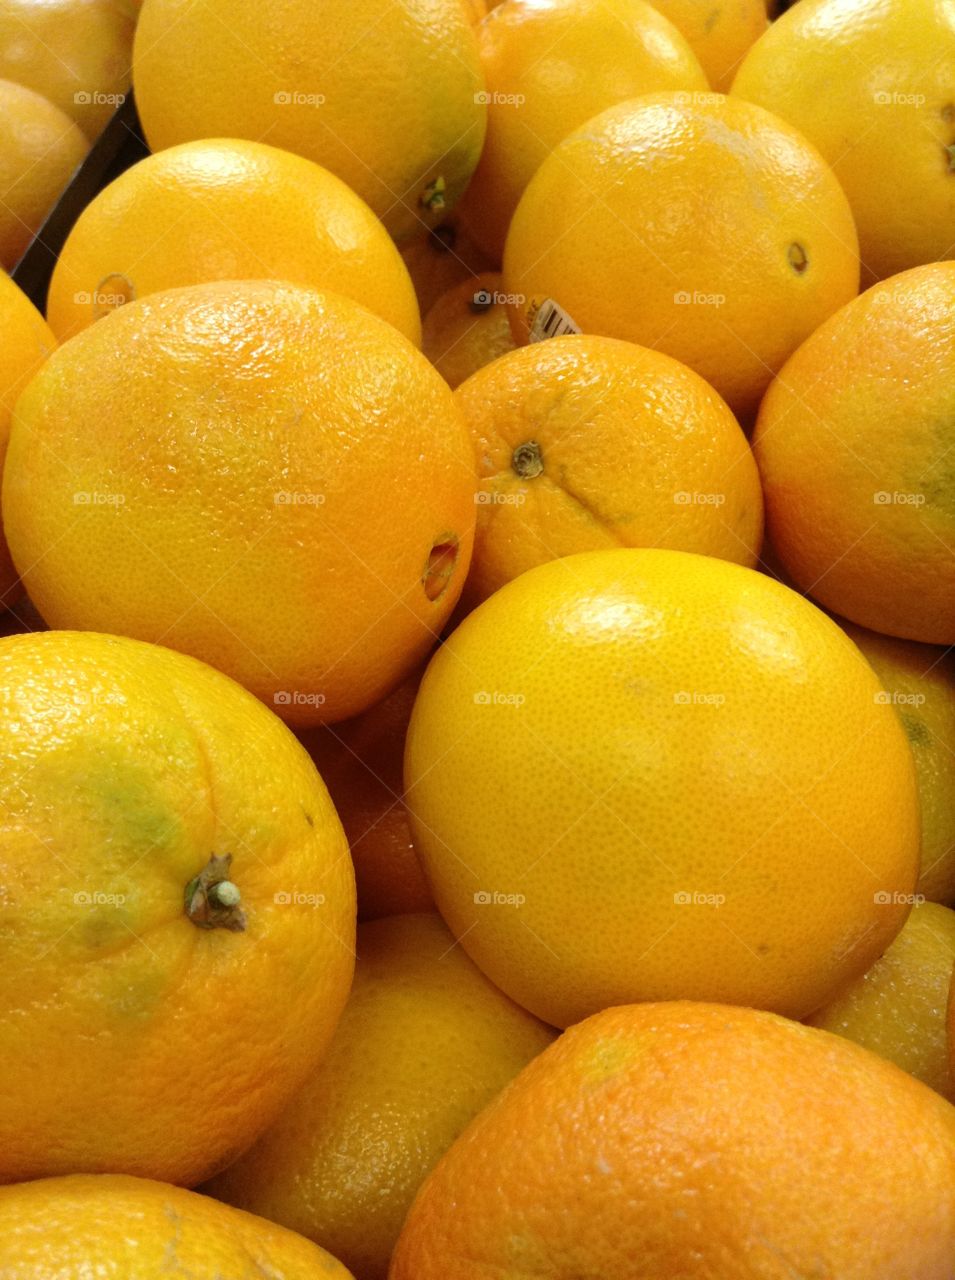 Oranges taken at a market 